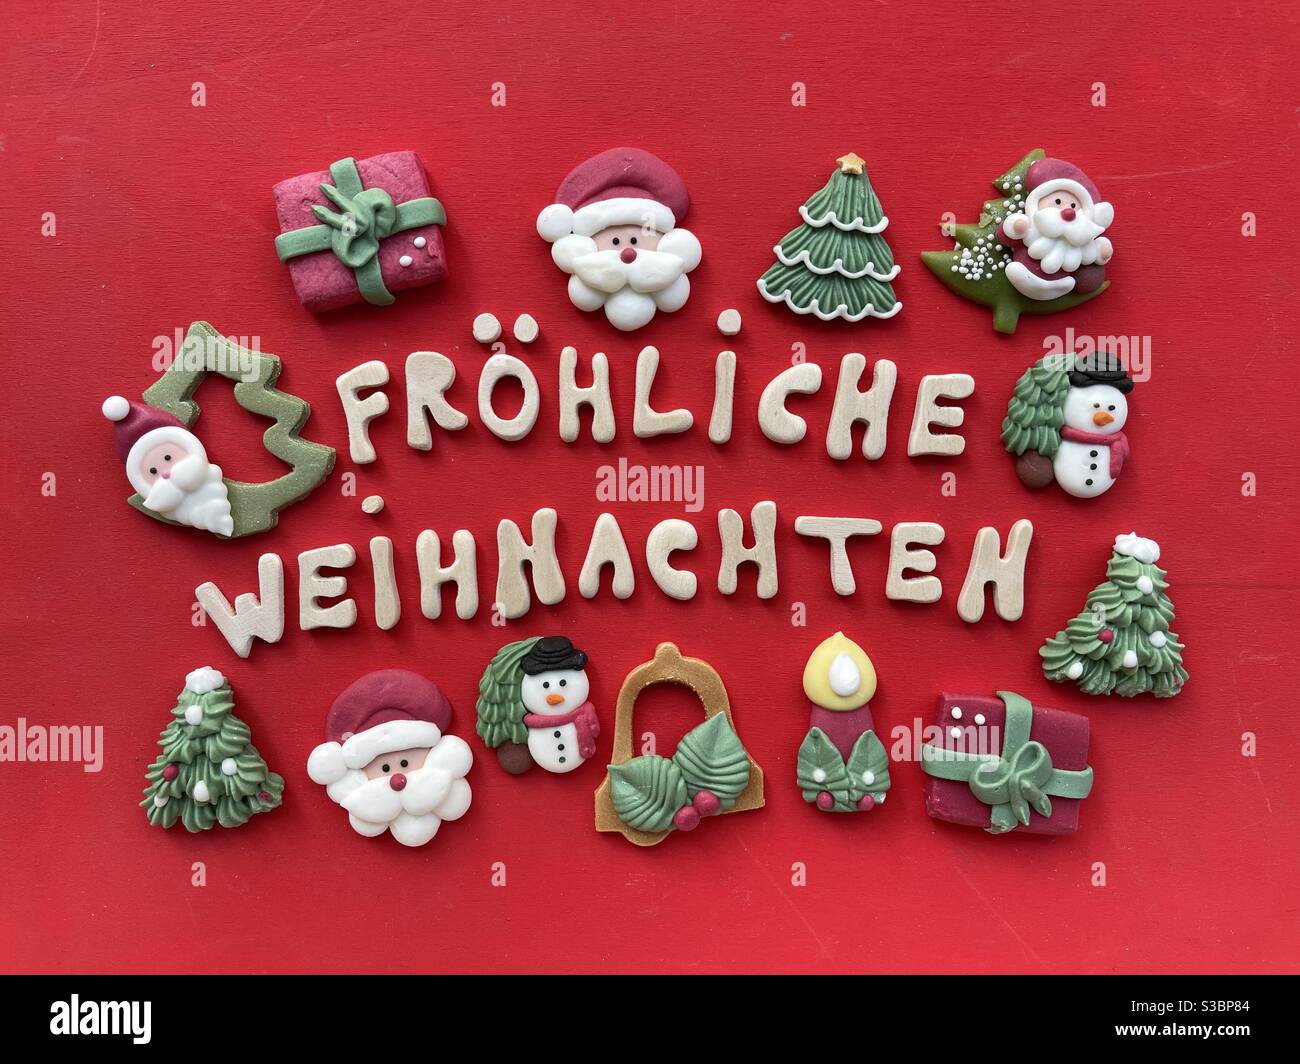 Fröhliche Weihnachten, Joyeux Noël en langue allemande avec des lettres en bois et des symboles de Noël en massepain Banque D'Images